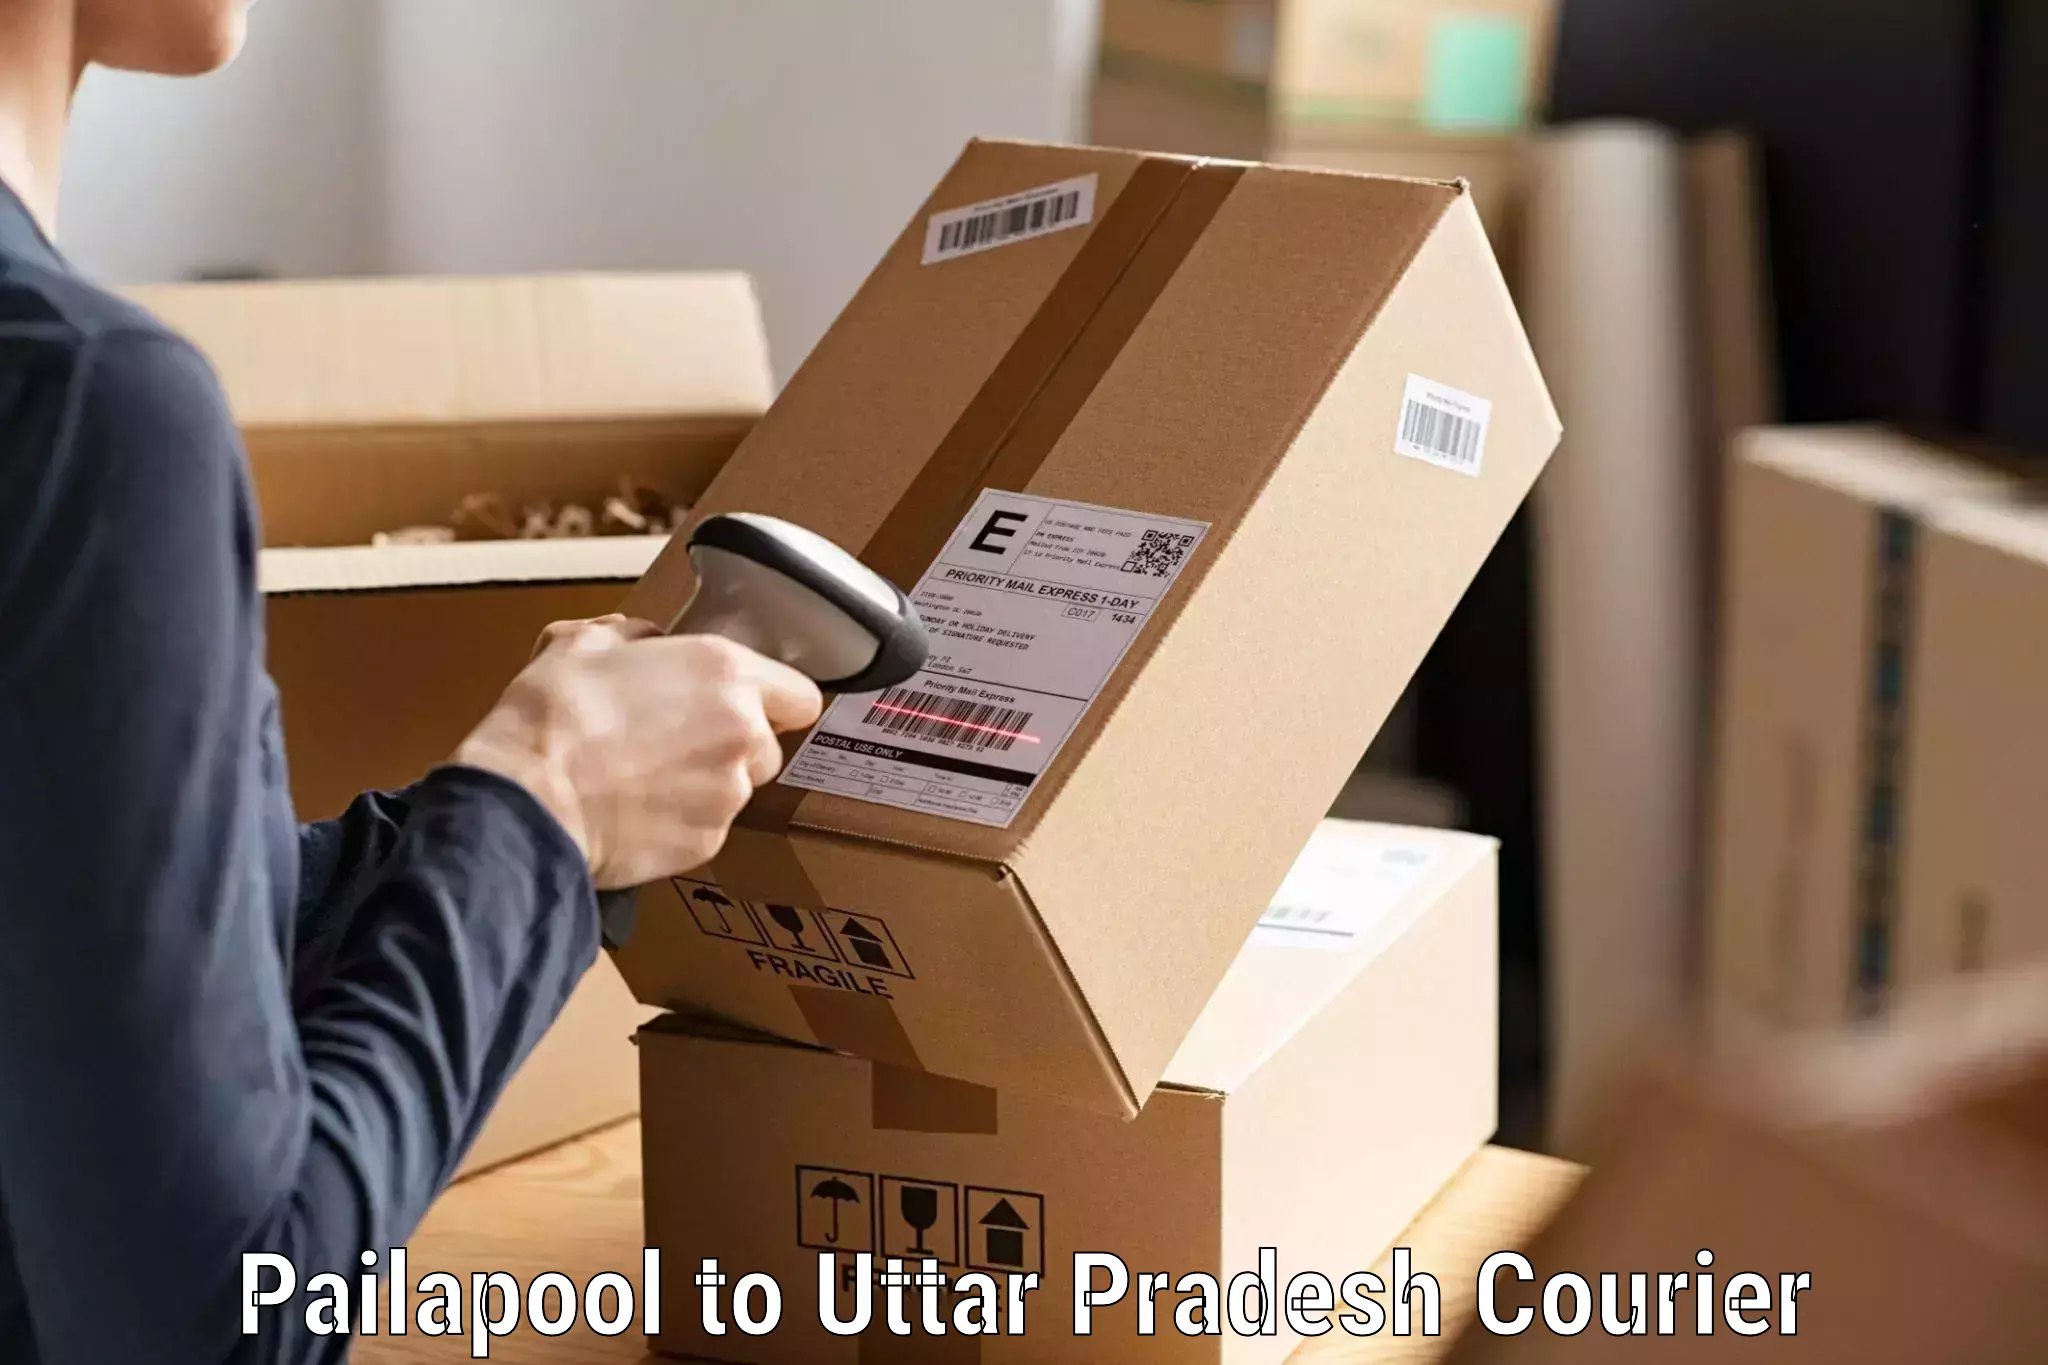 Cargo courier service Pailapool to Varanasi